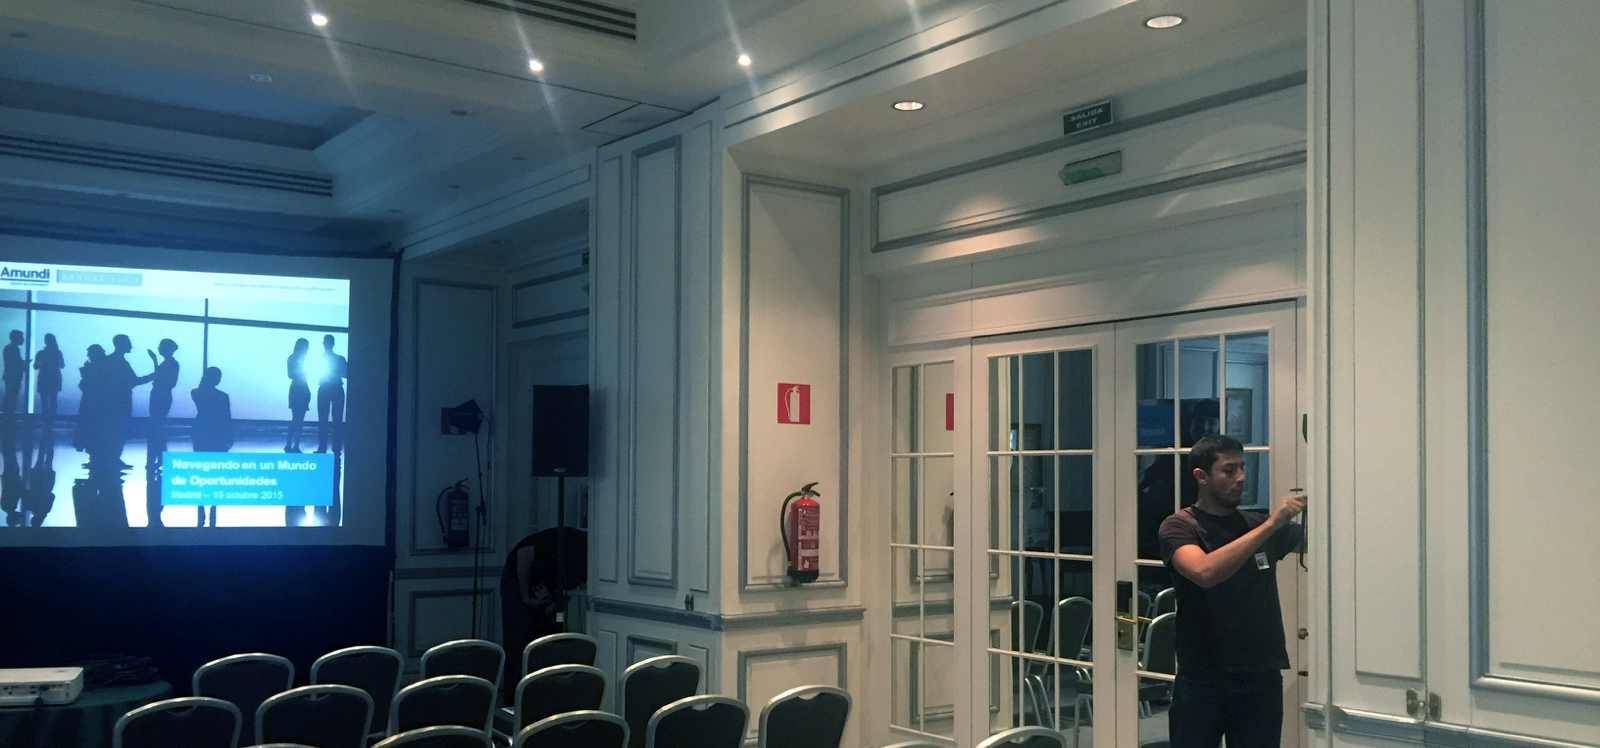 Ultimando detalles técnicos previos al inicio del encuentro de Amundi en The Westin Palace Madrid